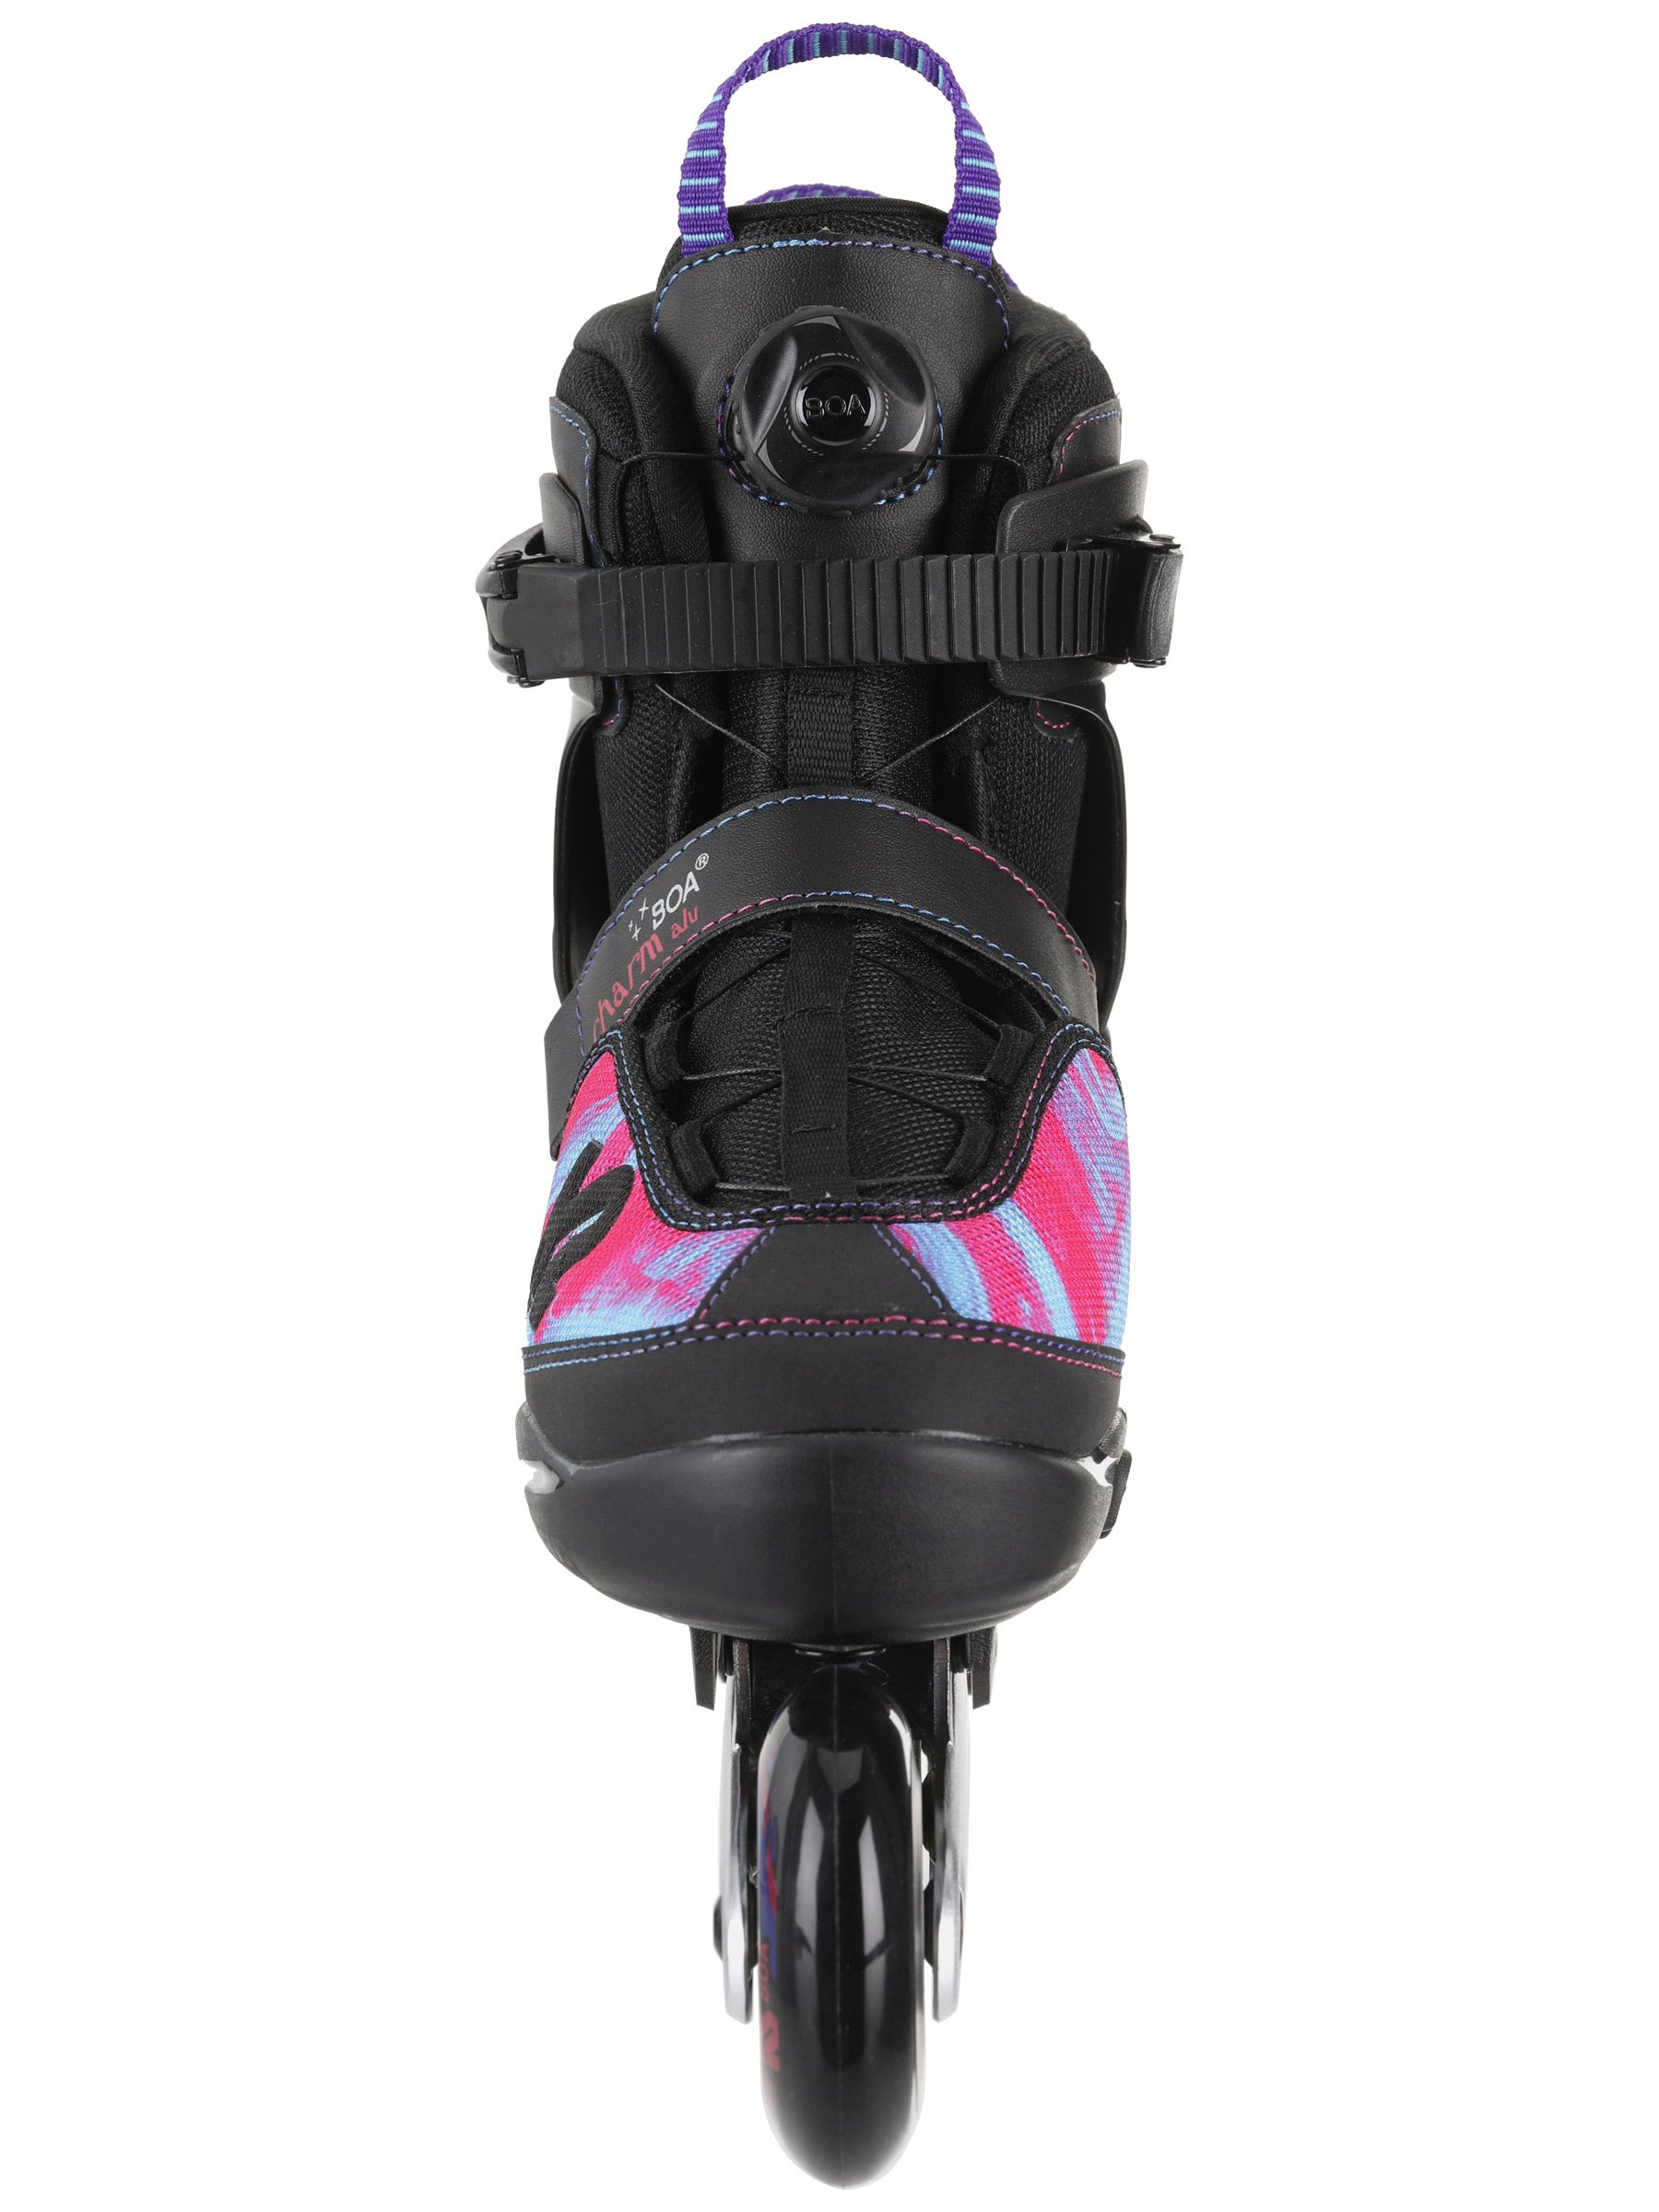 Black/Purple Details about   K2 Charm Boa Alu Adjustable Inline Skates 